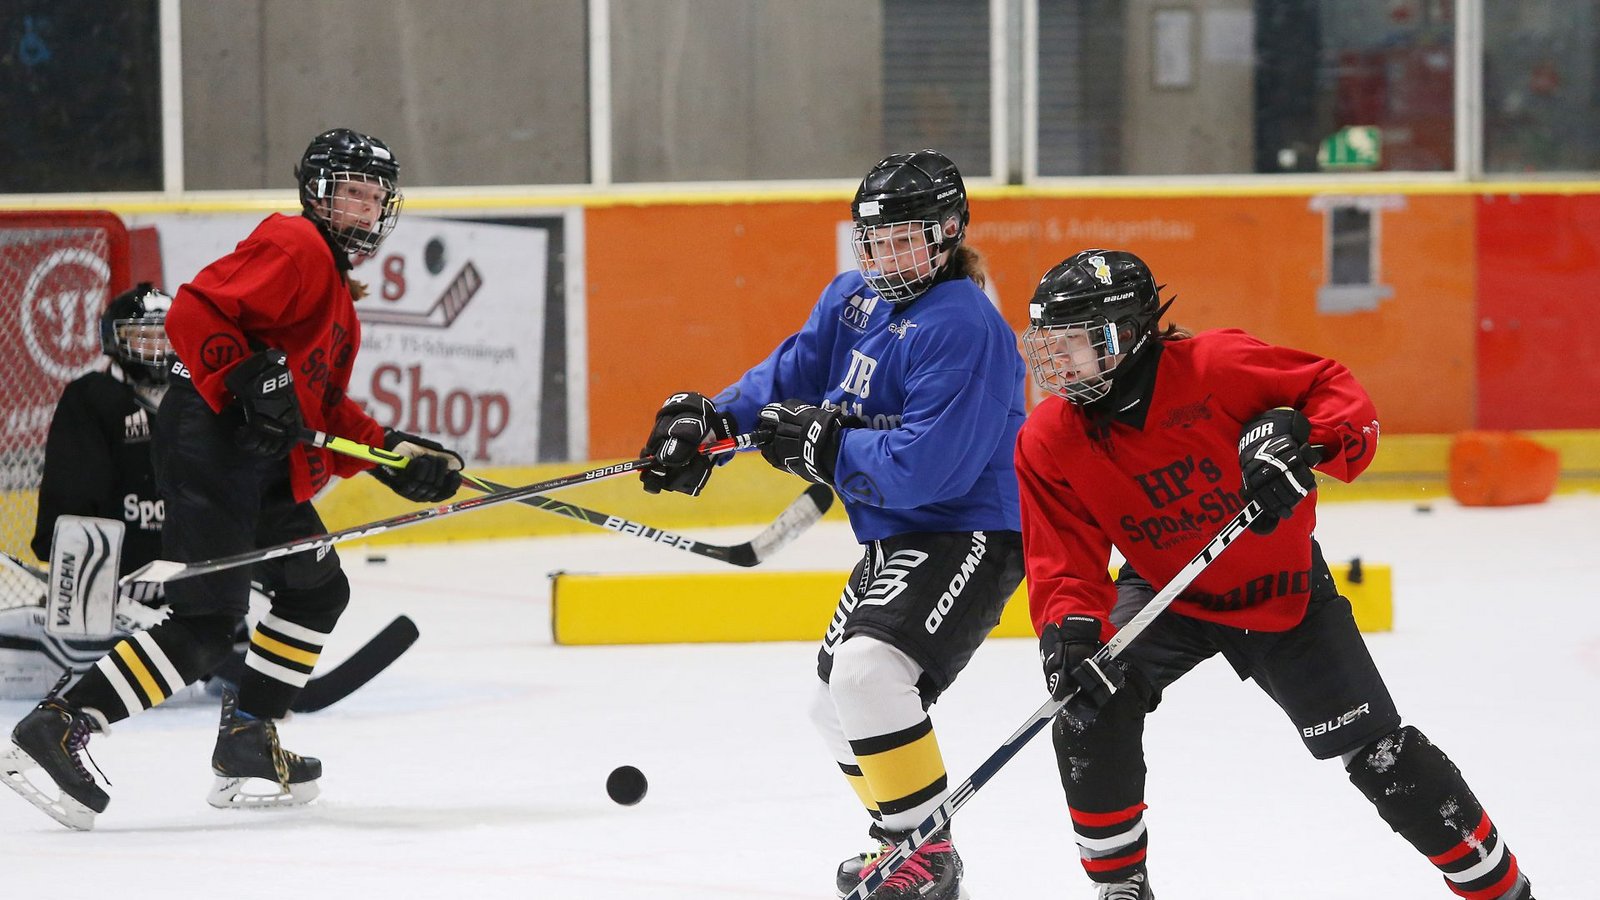 Im Jugend-Eishockey eine Seltenheit: Ein Spiel zwischen zwei Mädchen-Teams, üblicherweise treten Nachwuchs-Mannschaften gemischt an.Foto: Baumann/Julia Rahn